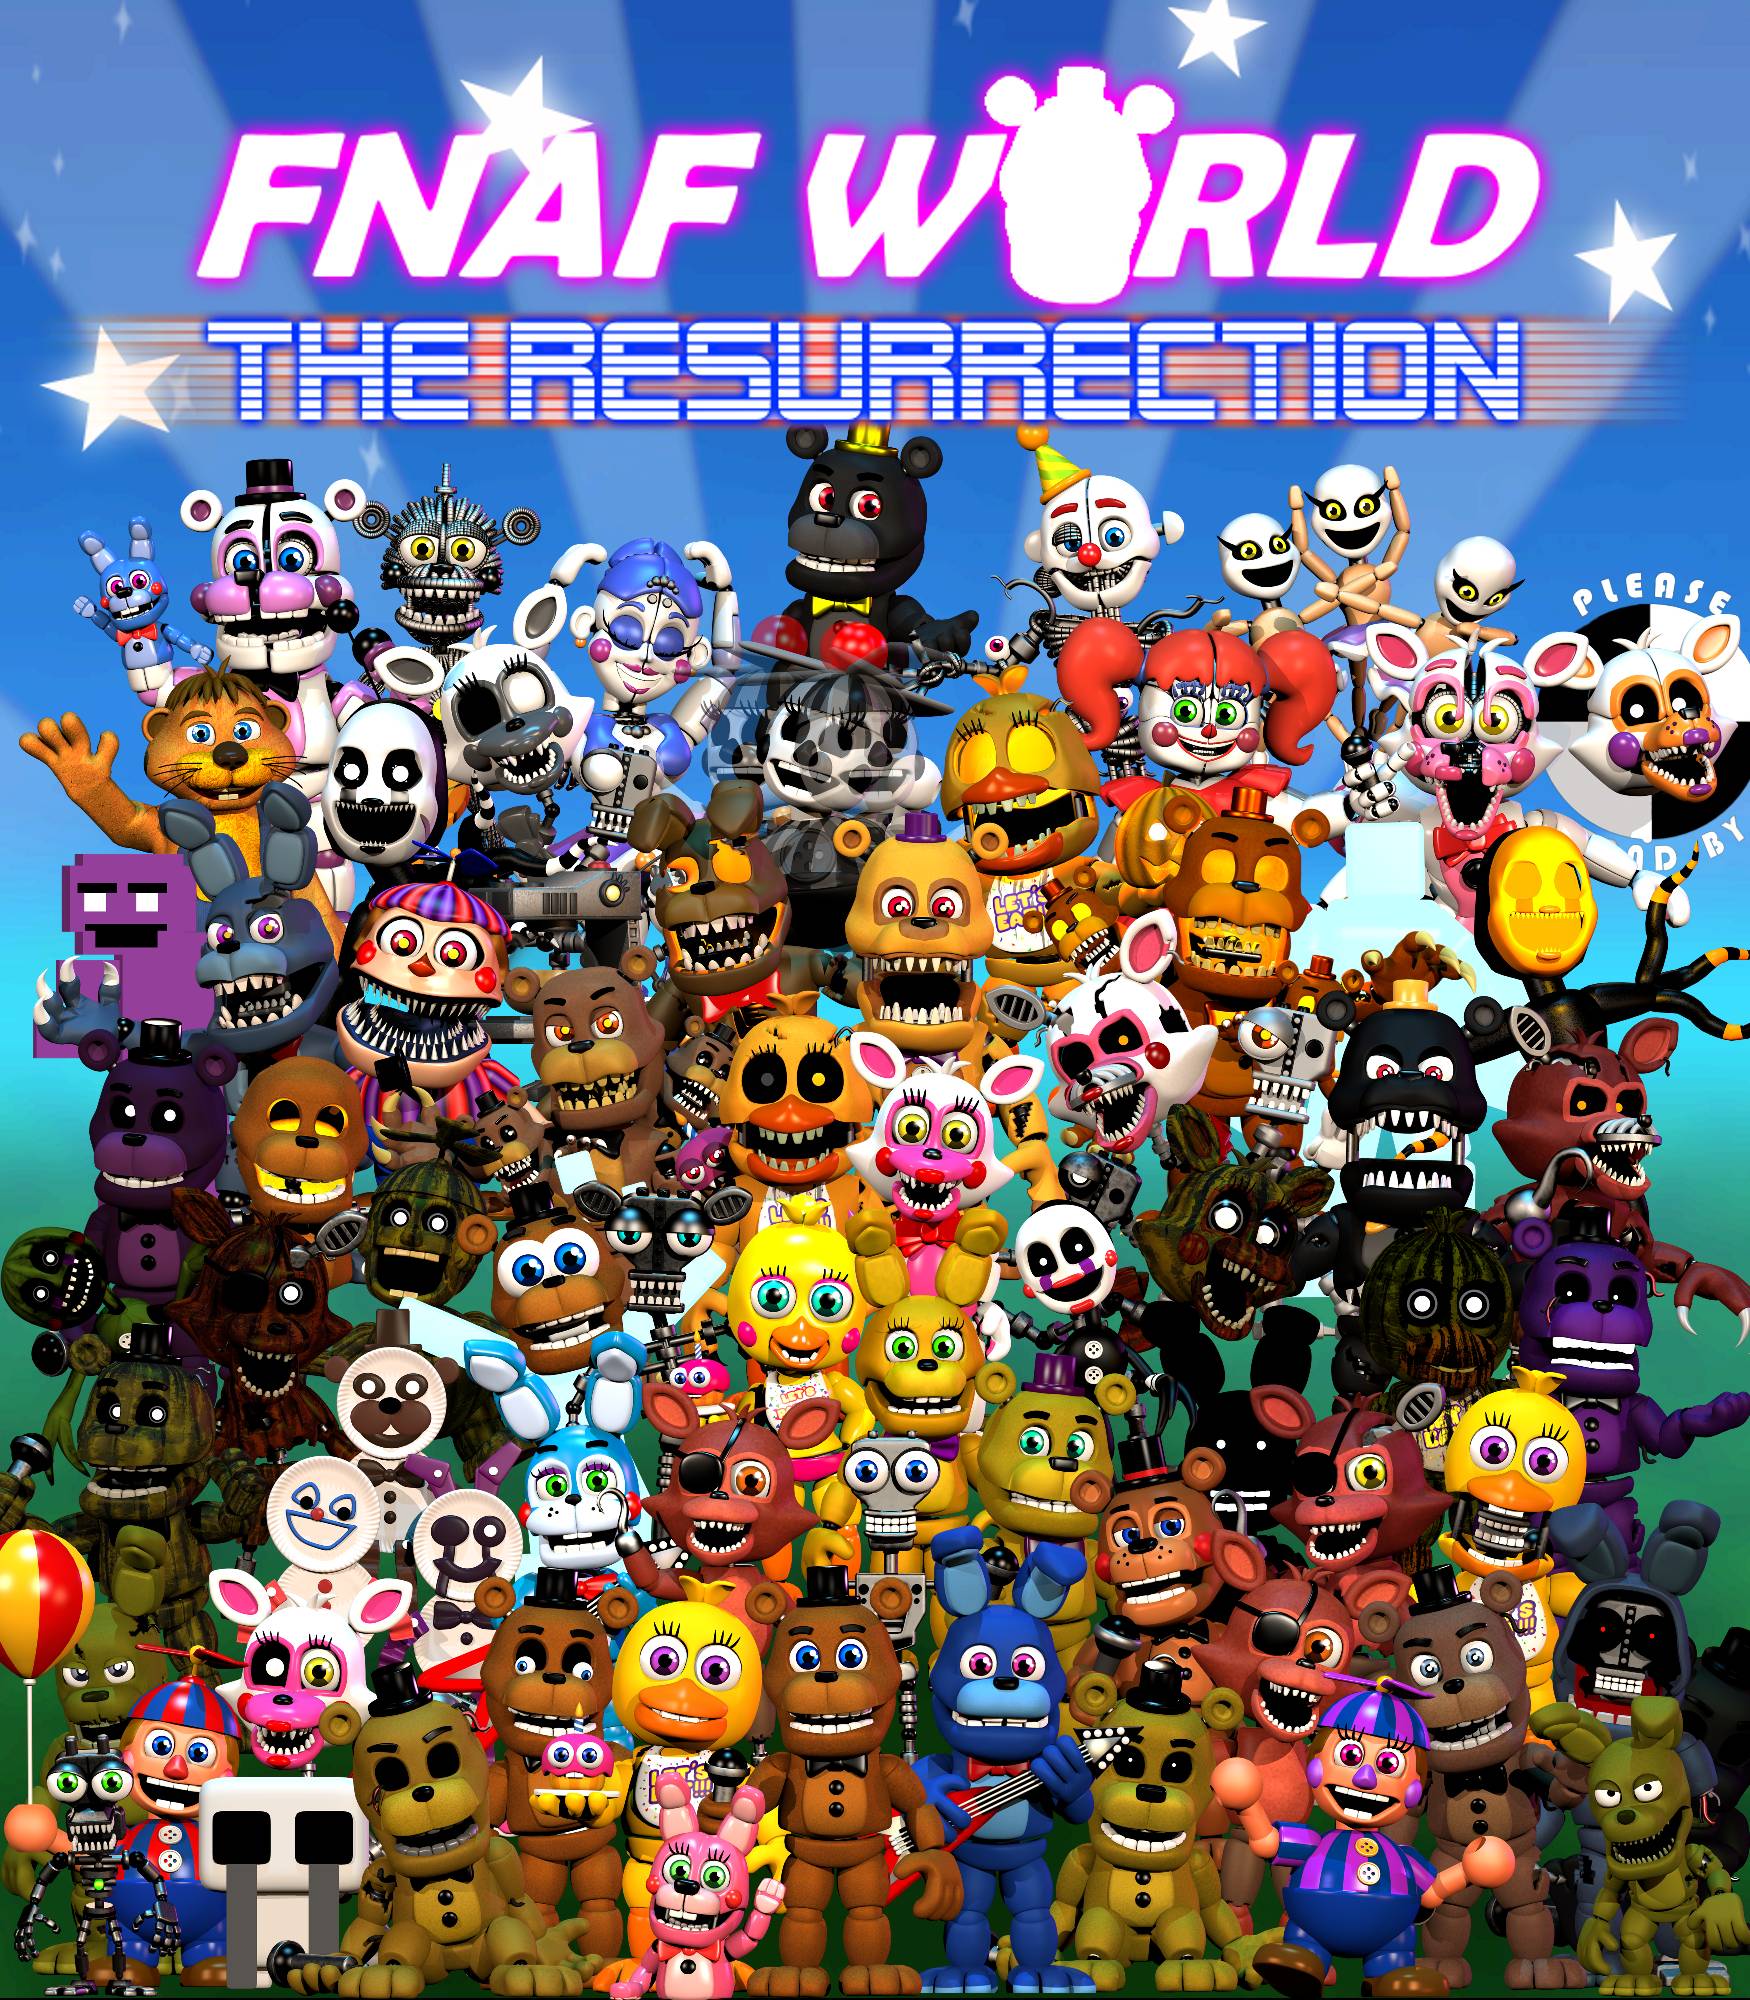 FNaF World Update 3 by kalel6753 on DeviantArt